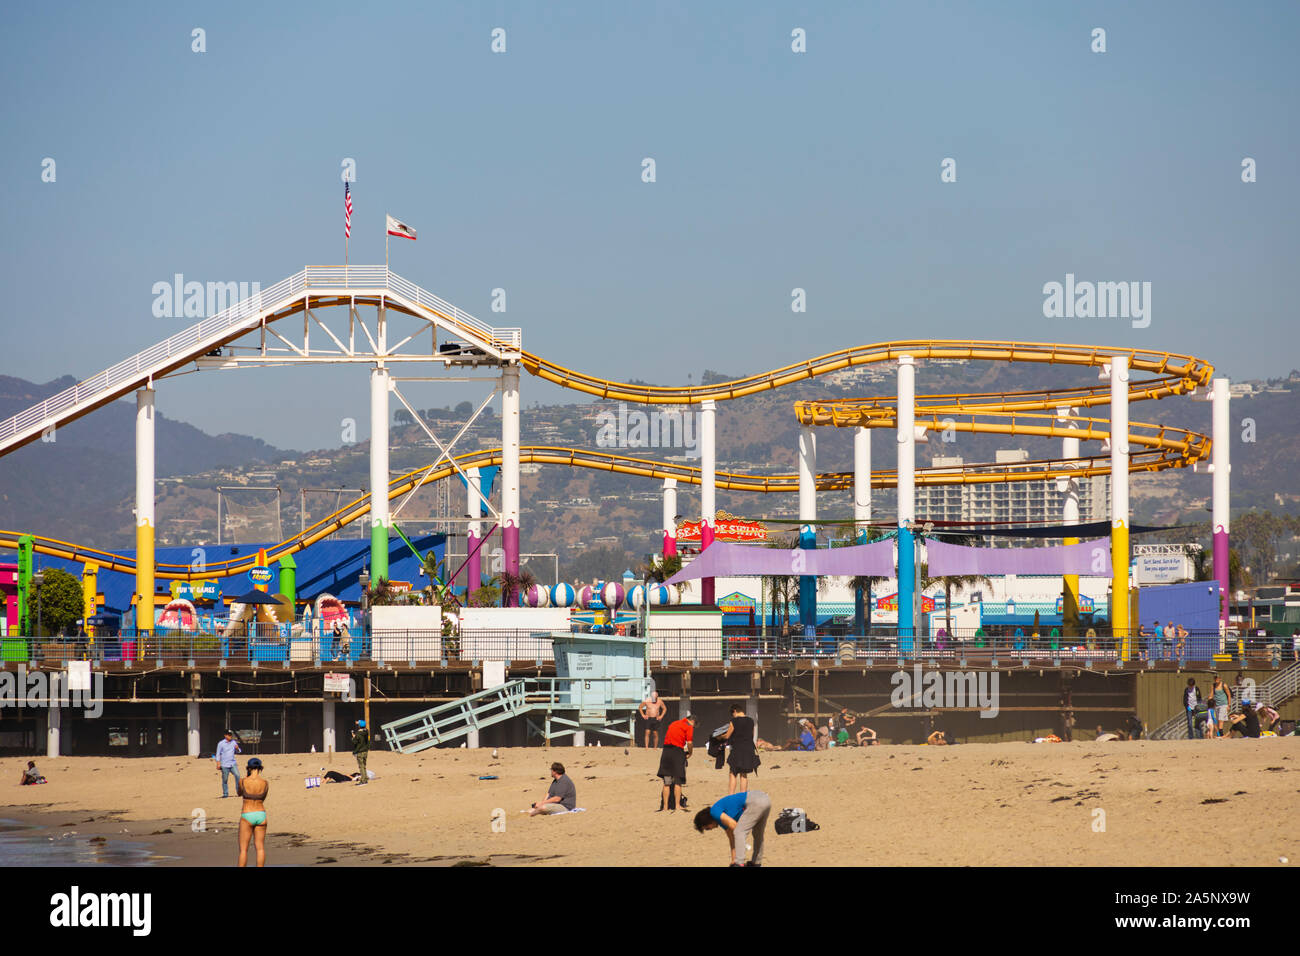 Am Strand von Santa Monica Pier, Pacific Park, Los Angeles, Kalifornien, Vereinigte Staaten von Amerika. USA Stockfoto